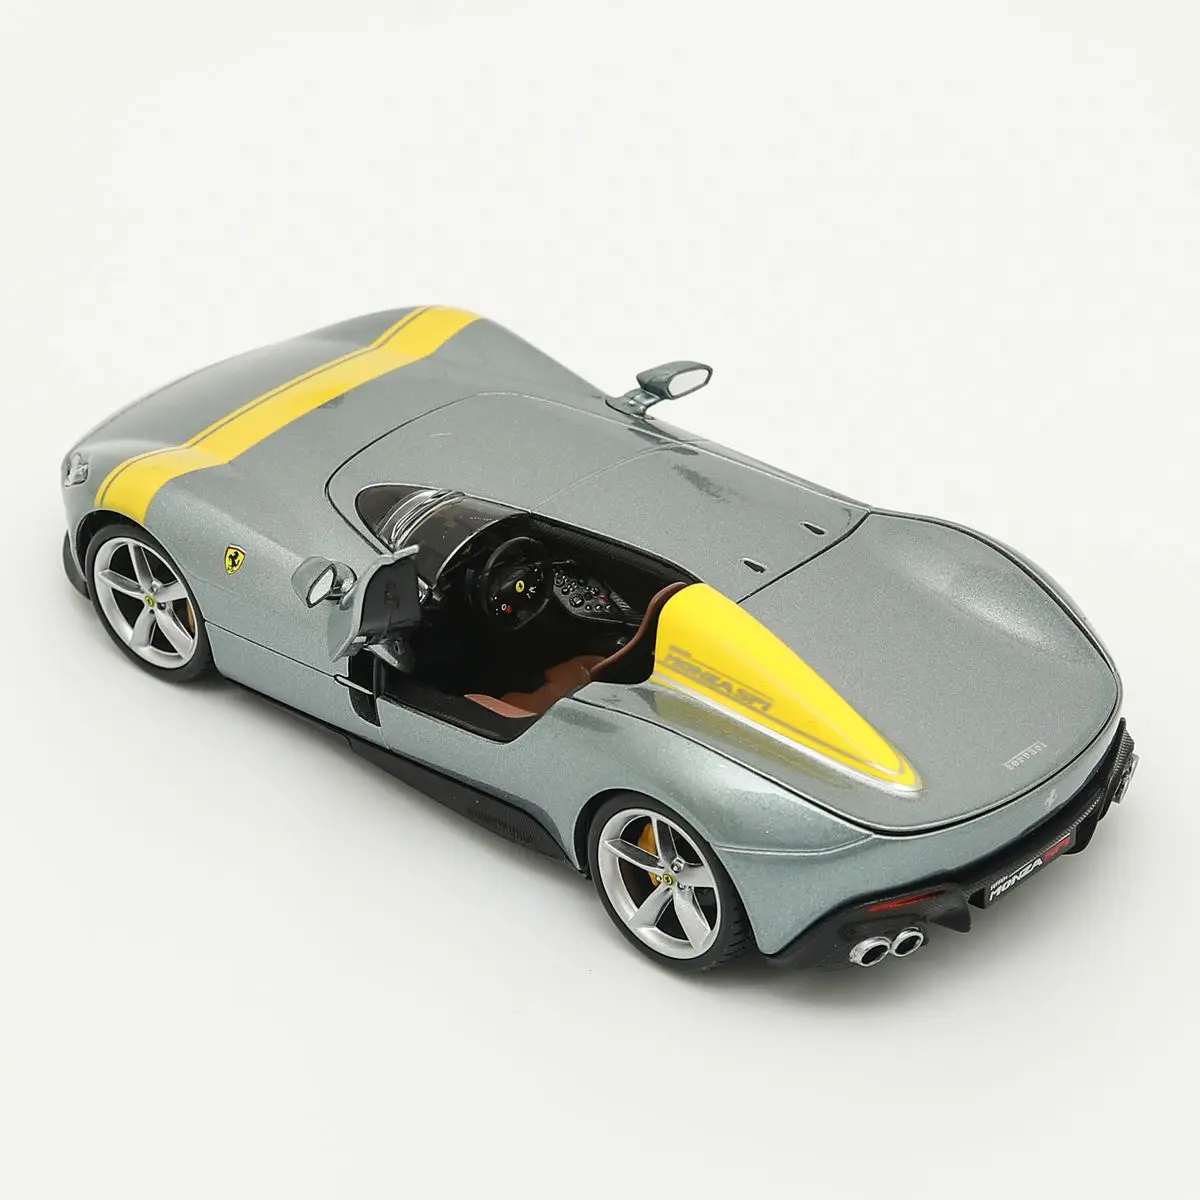 

Металлический роскошный автомобиль Ferrari Concept Monza SP1 в масштабе 1:24, литые модели автомобилей, коллекционная игрушка, подарок на Рождество